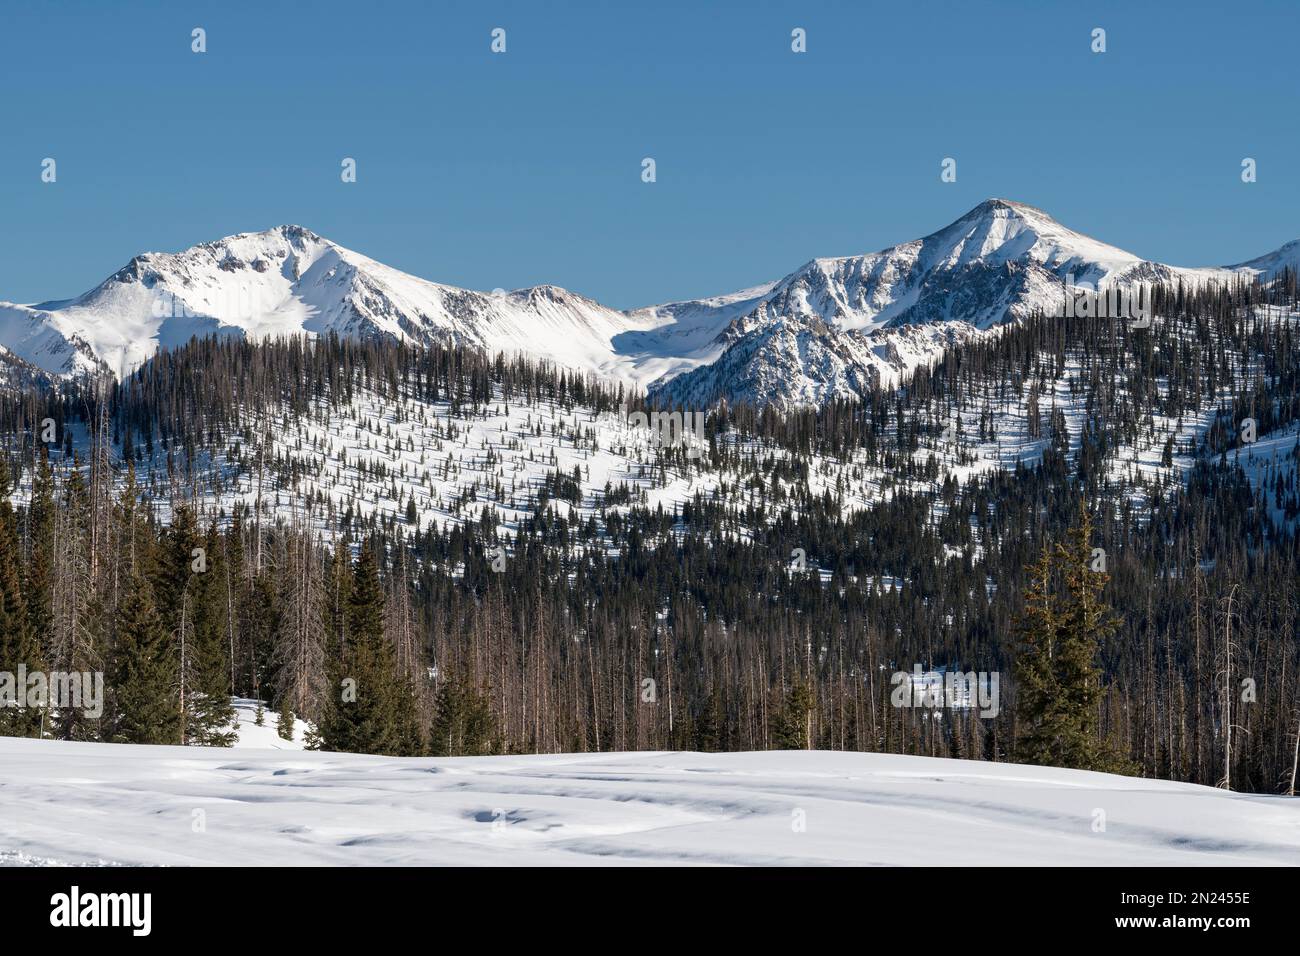 Los picos nevados de alta montaña son el telón de fondo de Wolf Creek Ski Area, Colorado. Las montañas de San Juan reciben generosas cantidades de nieve. Foto de stock